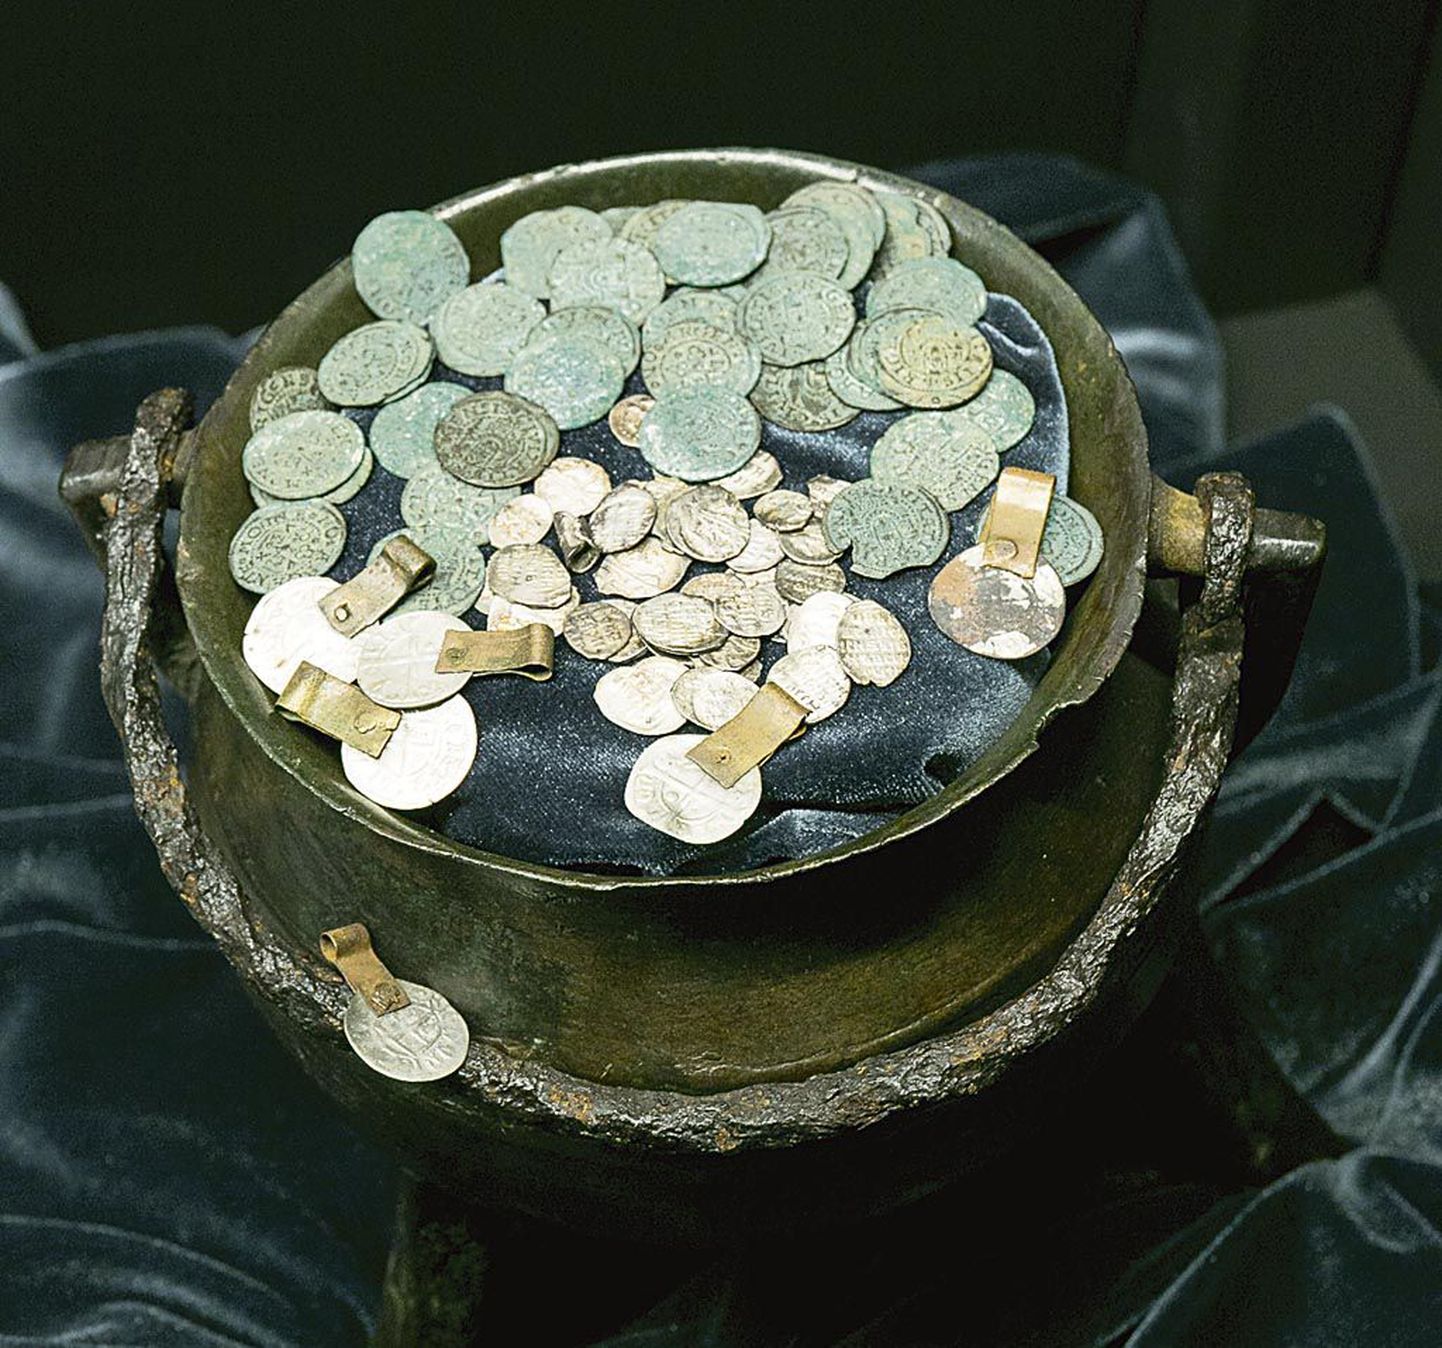 Tõstamaalt Kaistest leitud kolmjalanõusse peidetud mündid.